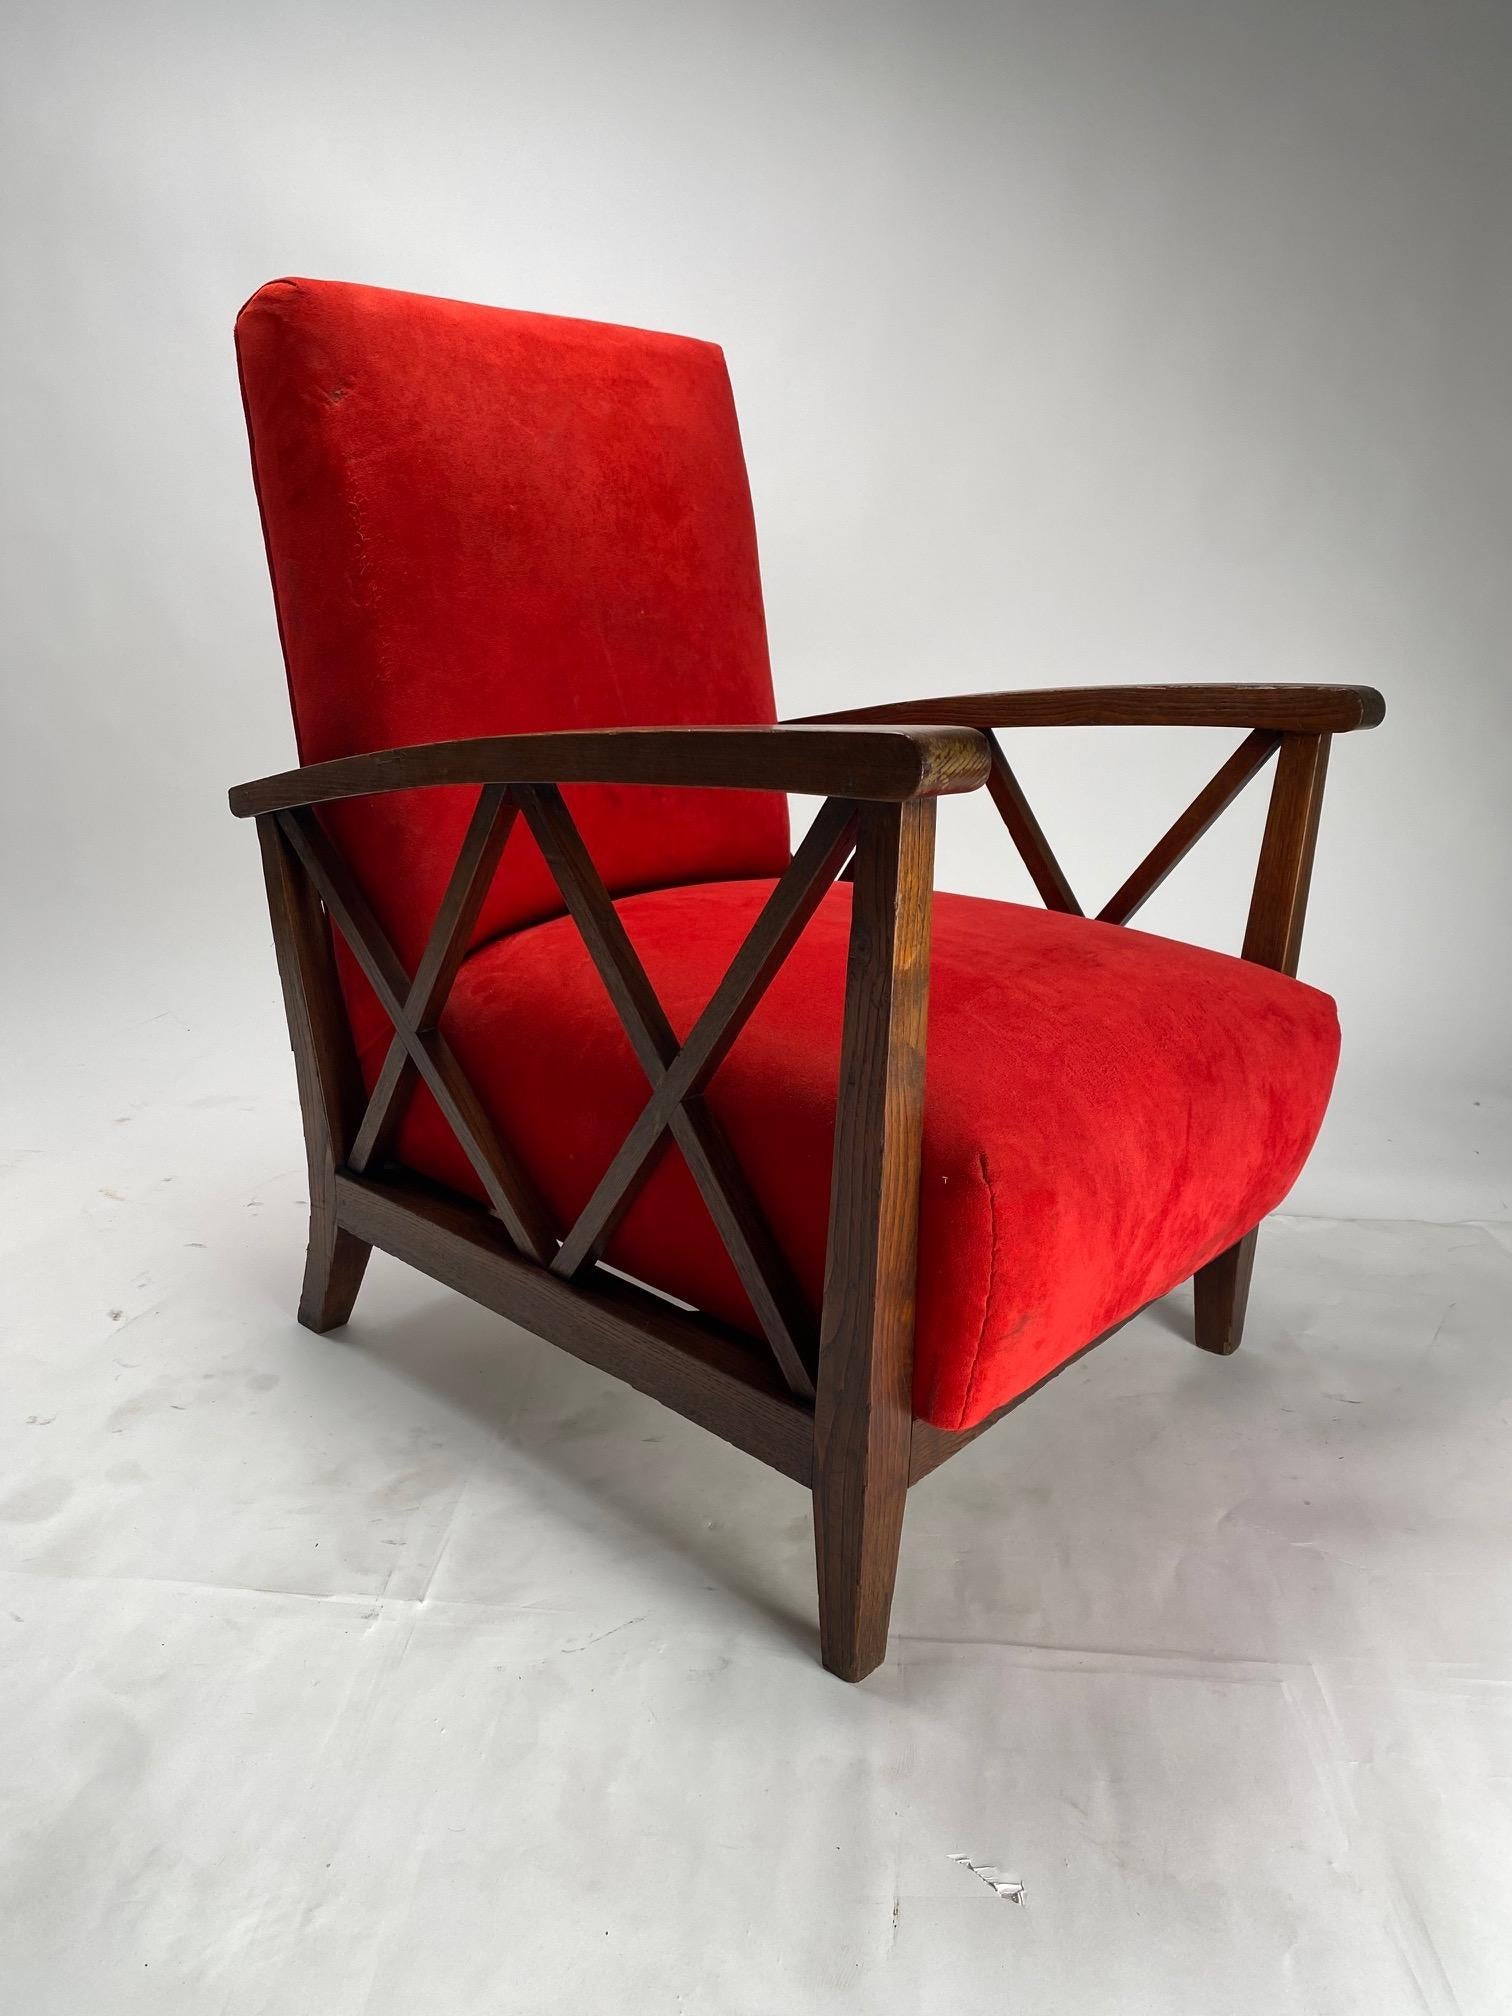 Zwei moderne Sessel aus der Mitte des Jahrhunderts mit Holzstruktur und roten Stoffkissen, im Stil des Mailänder Architekten Paolo Buffa.

Wir haben den Originalstoff beibehalten, aber wir können die Sessel in der vom Kunden bevorzugten Farbe und